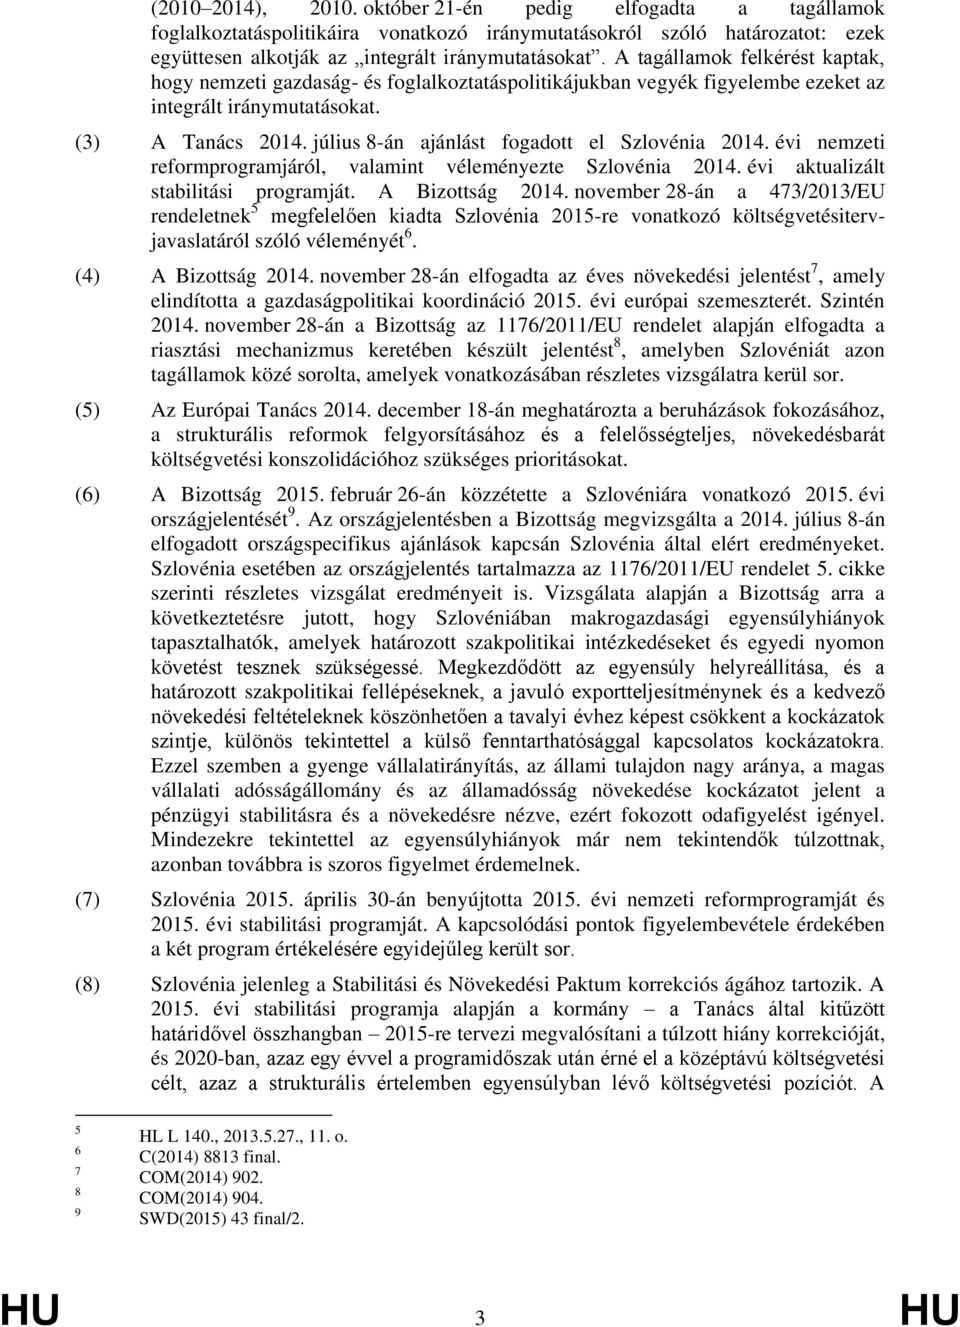 július 8-án ajánlást fogadott el Szlovénia 2014. évi nemzeti reformprogramjáról, valamint véleményezte Szlovénia 2014. évi aktualizált stabilitási programját. A Bizottság 2014.